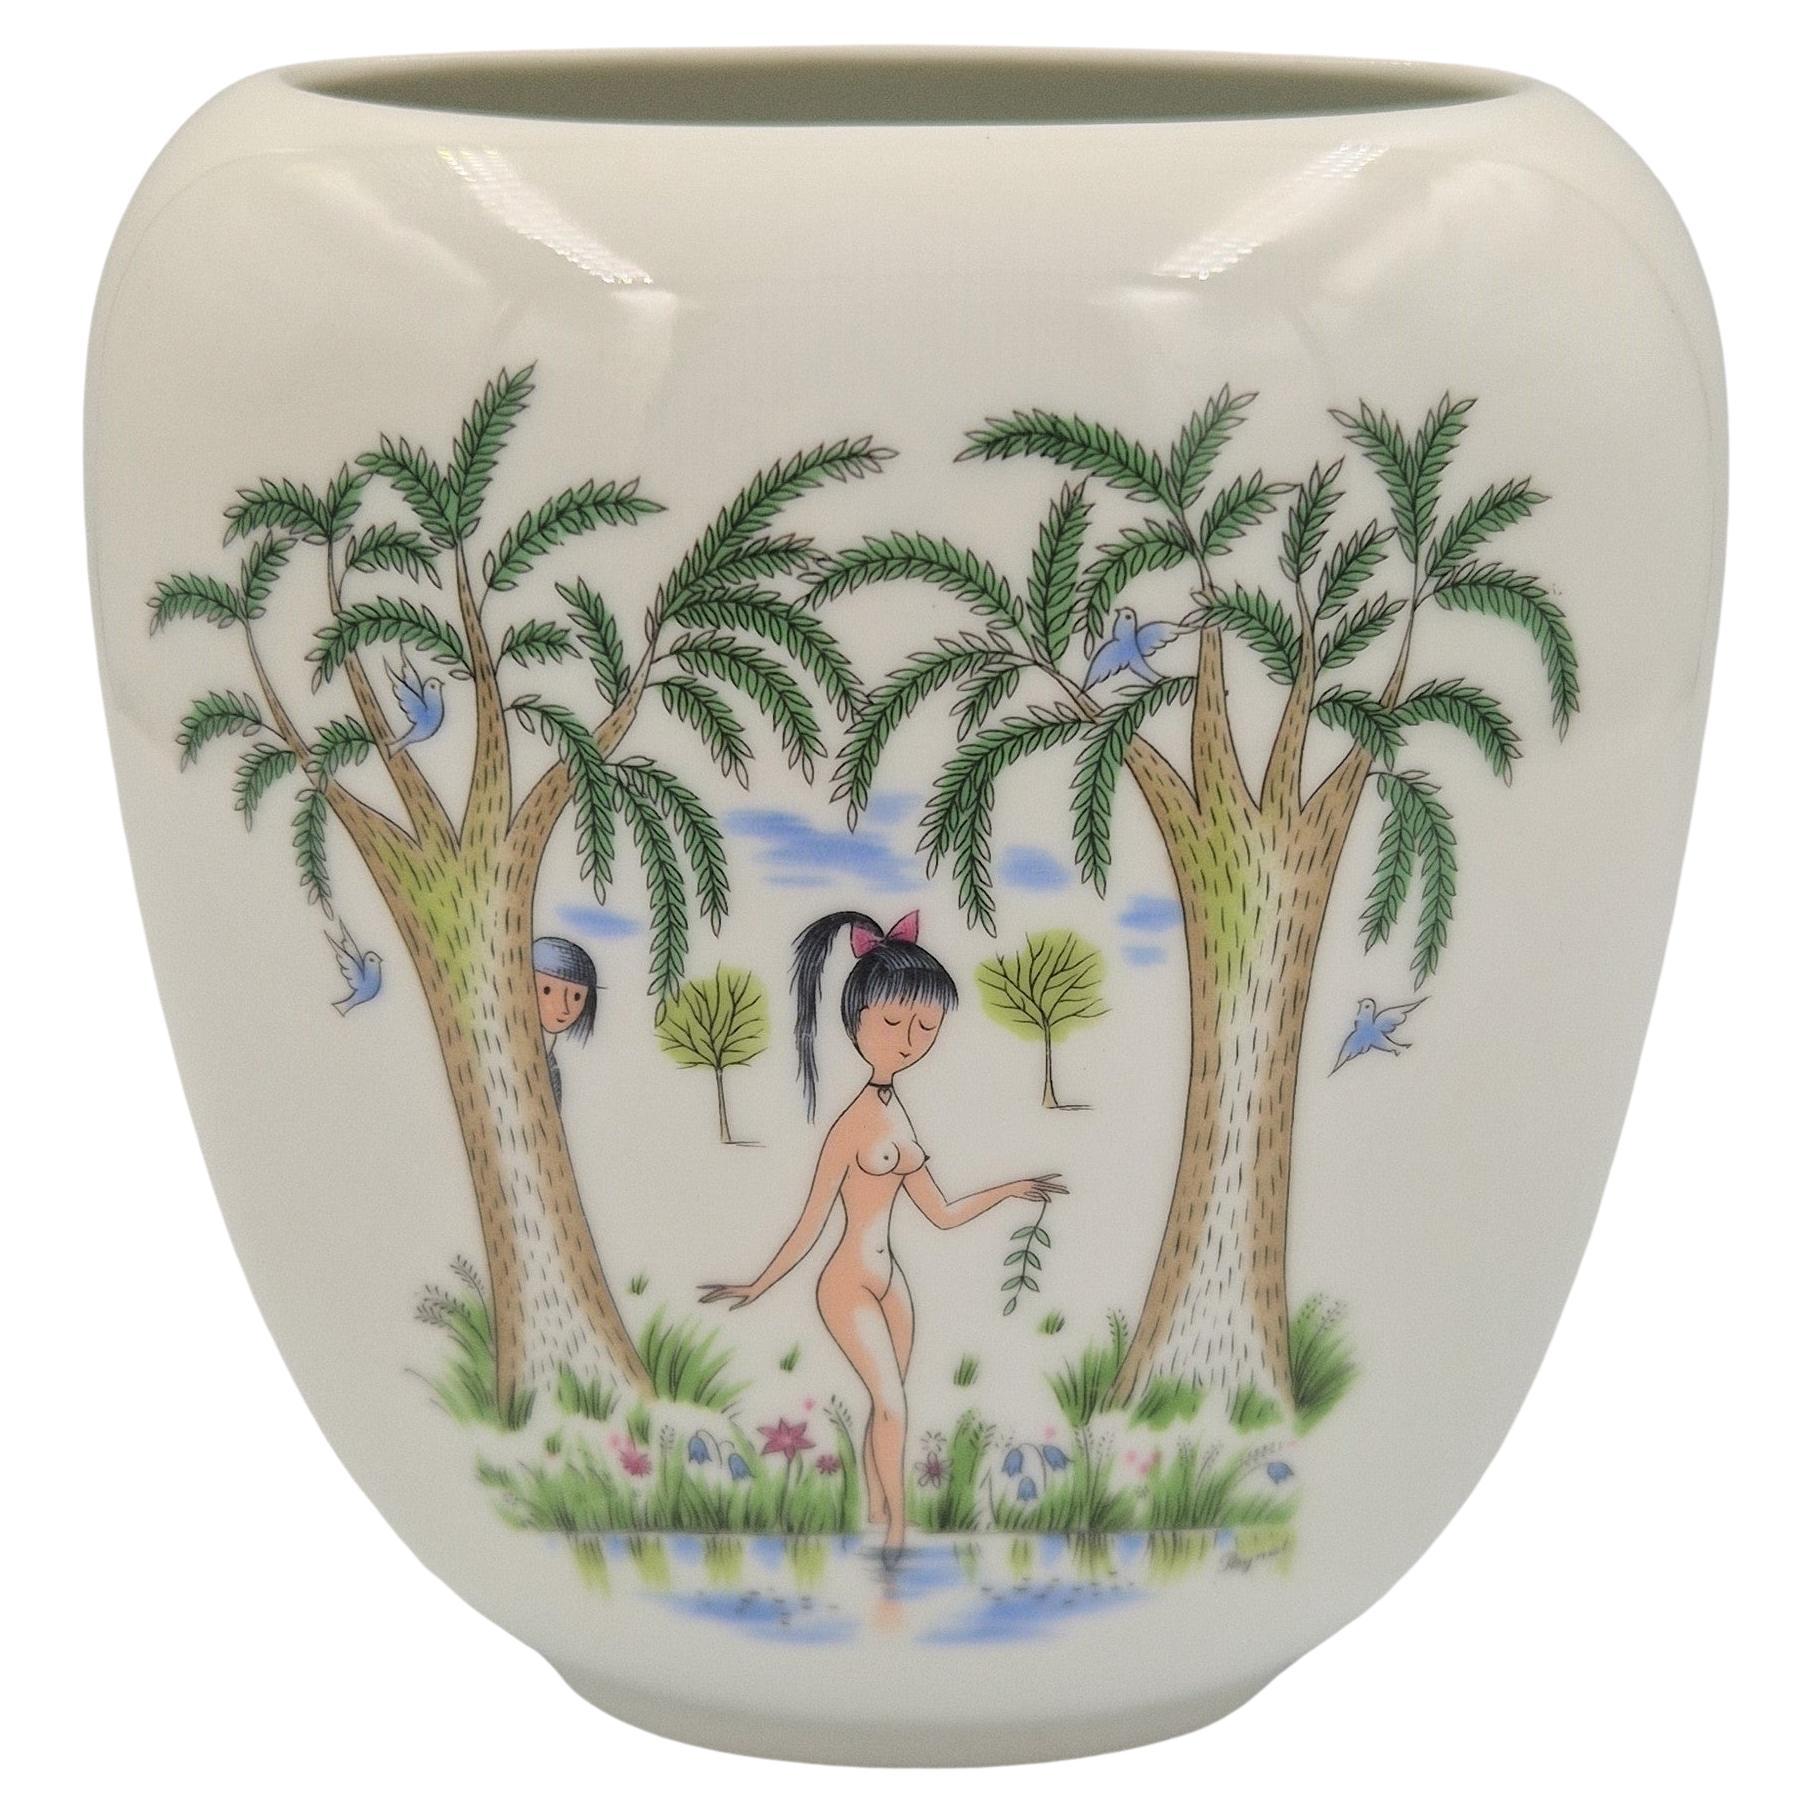 MId Century porcelain vase by Raymon Peynet for Rosenthal. 1950 - 1959